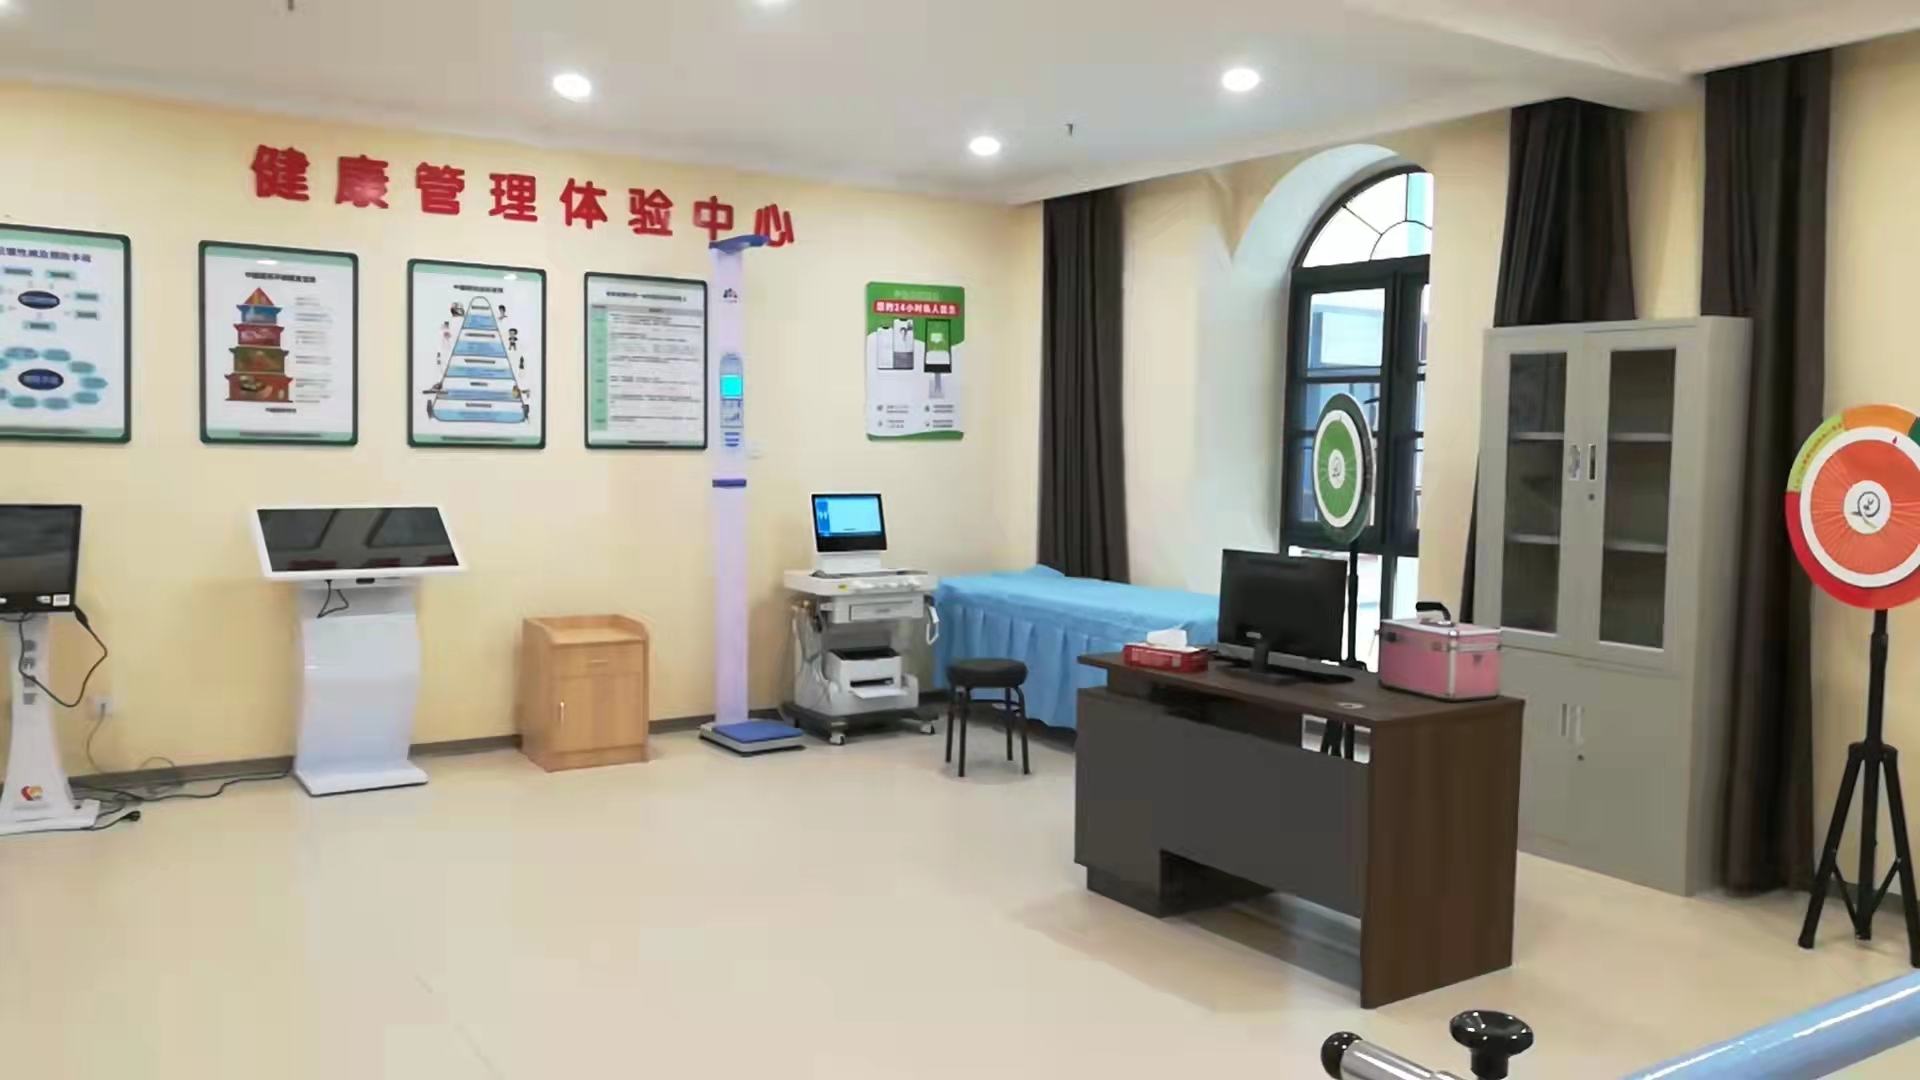 郑州高新区健康小屋正式投入使用,打通智慧医疗最后一公里!